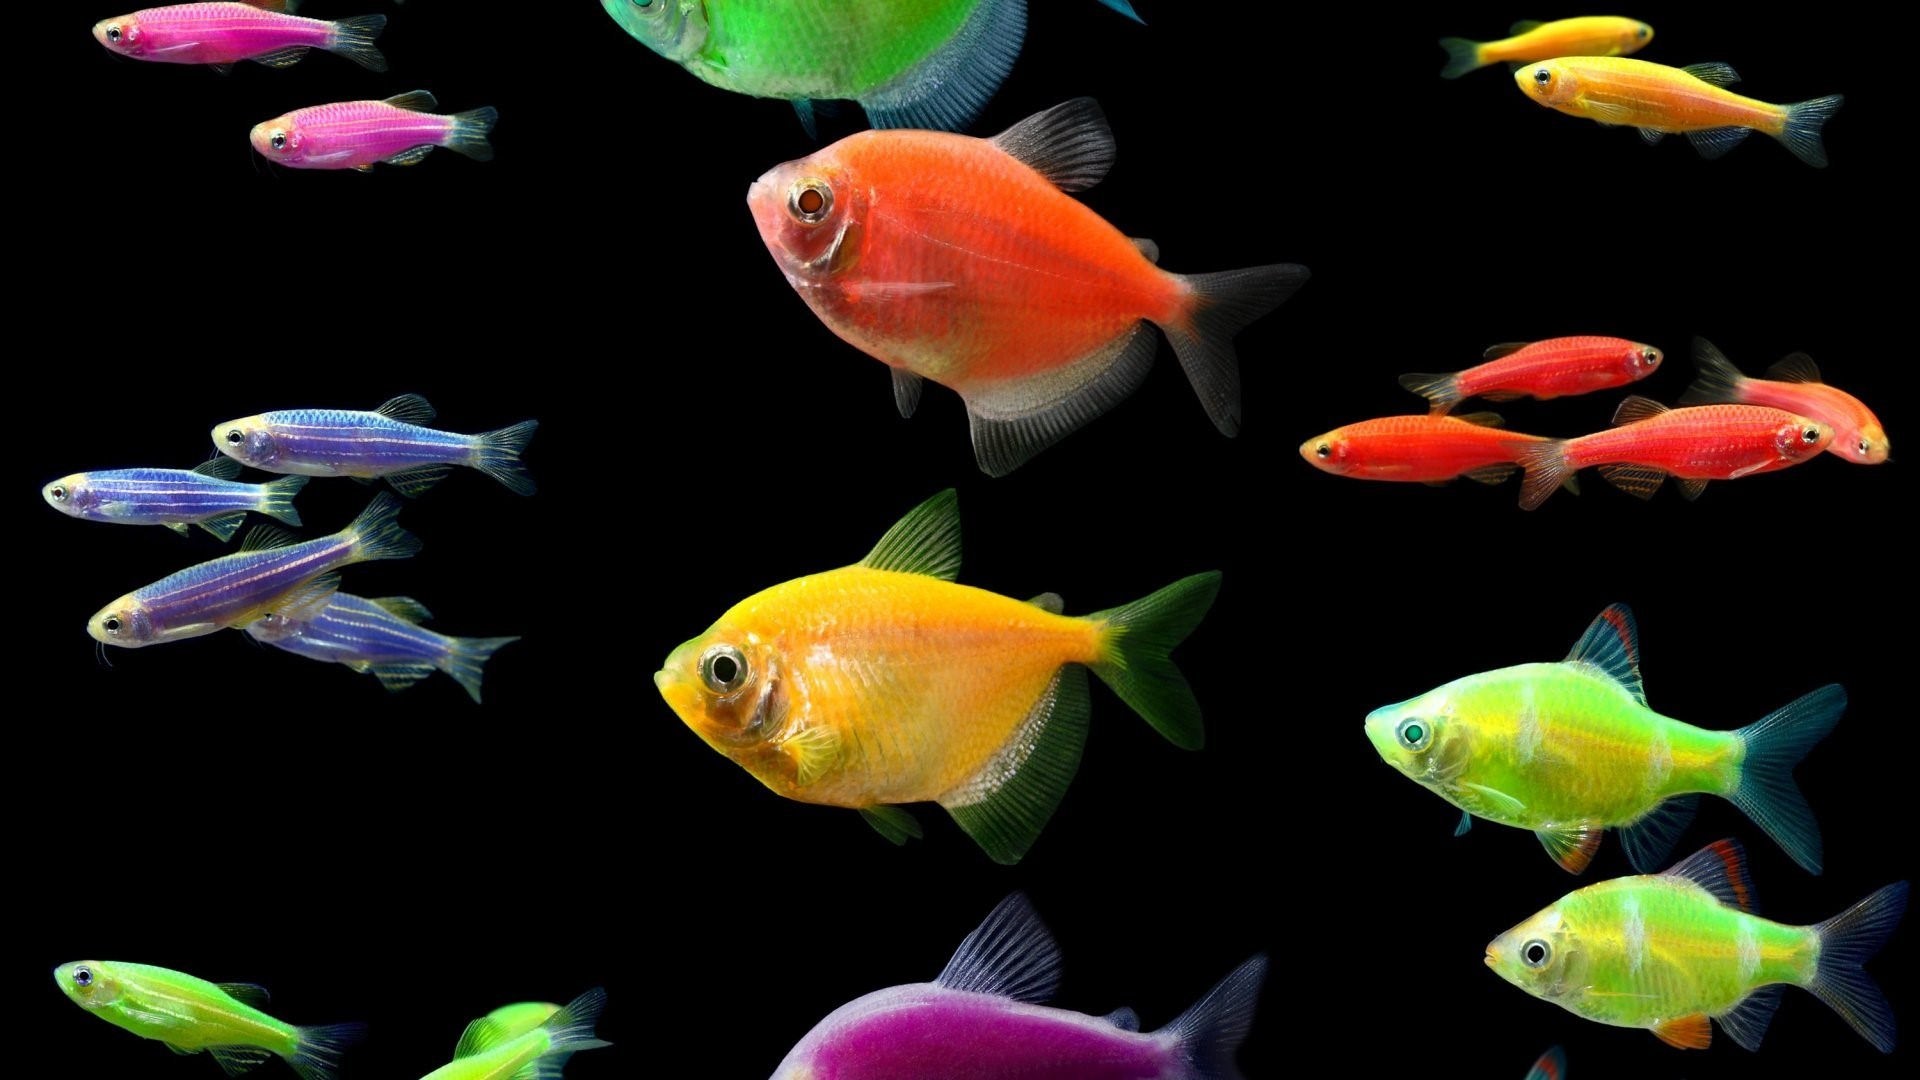 аквариумные рыбки виды таблица с фото